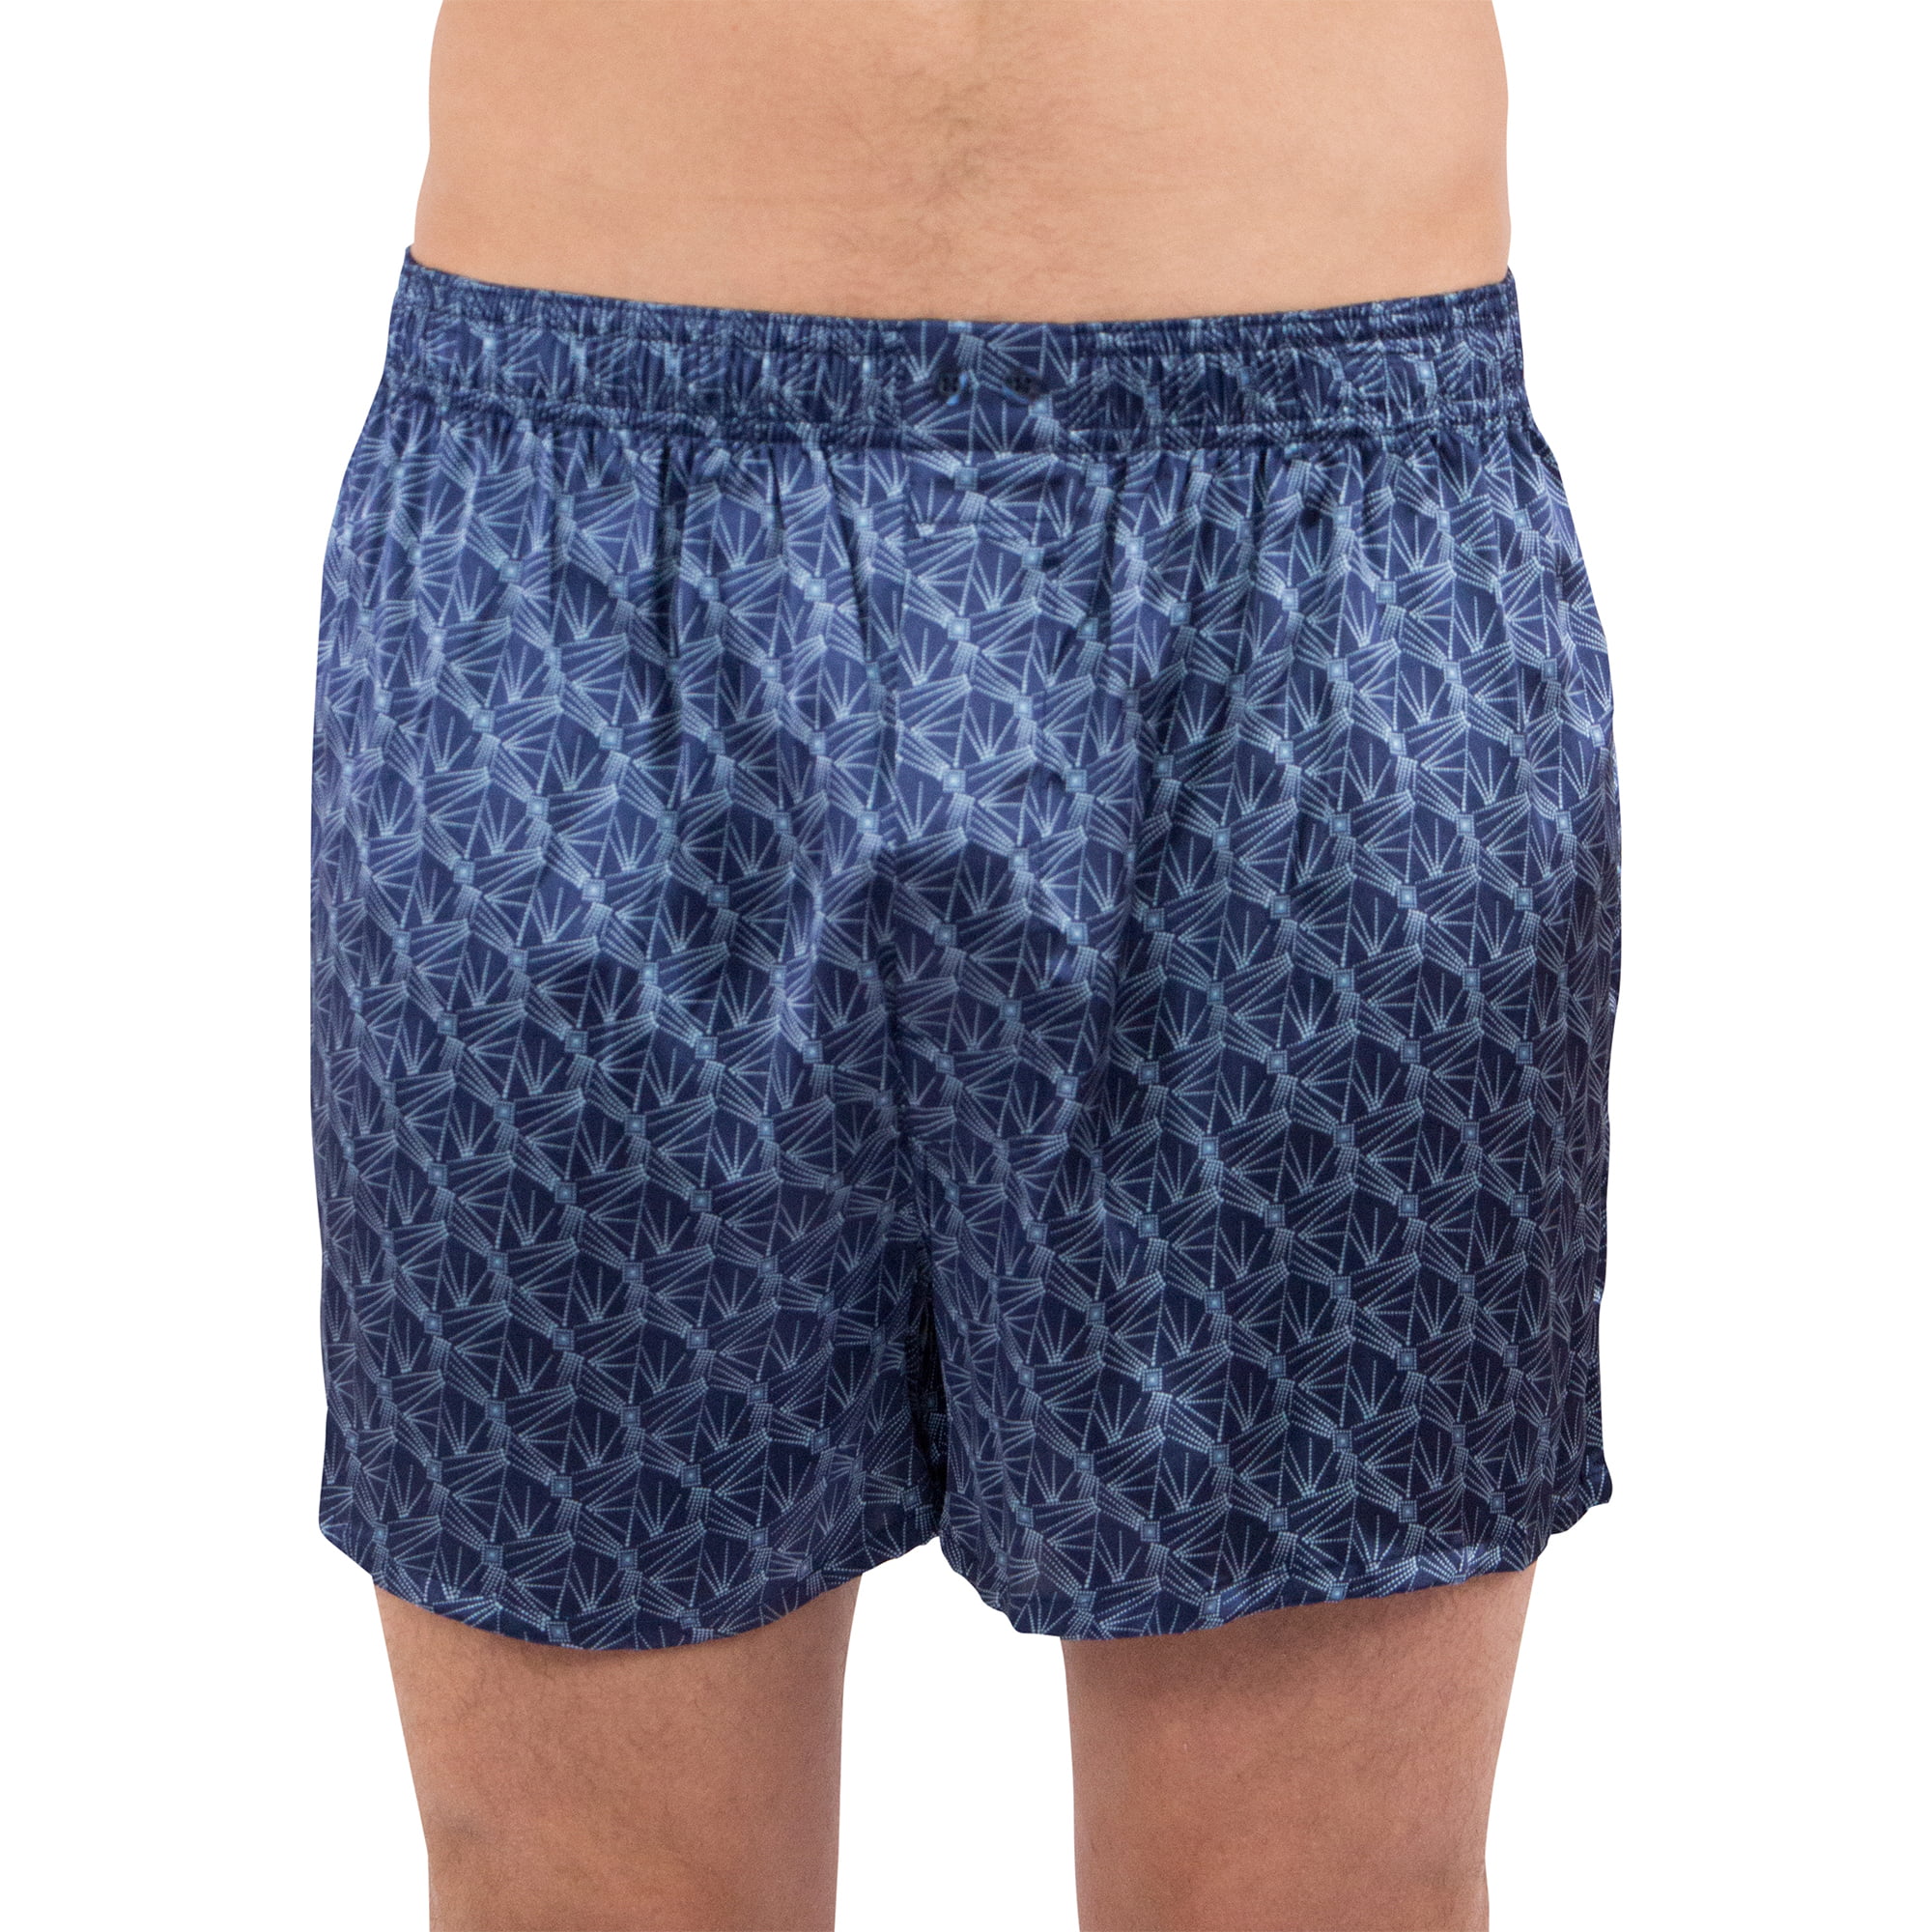 Intimo - Stretch Silk Boxer Shorts, Blue, Large - Walmart.com - Walmart.com